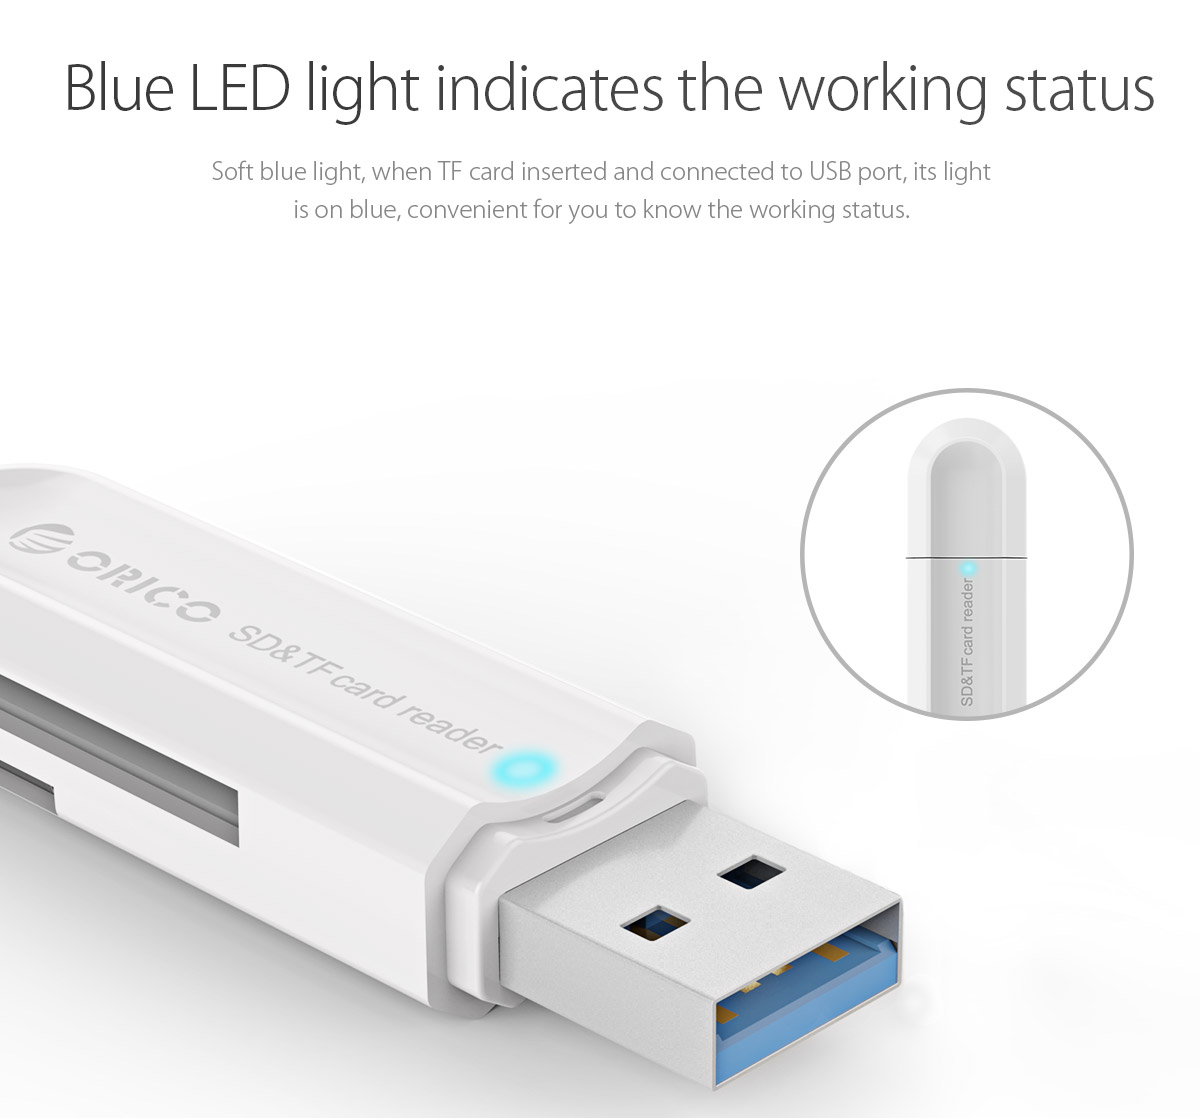 blue LED indicator light